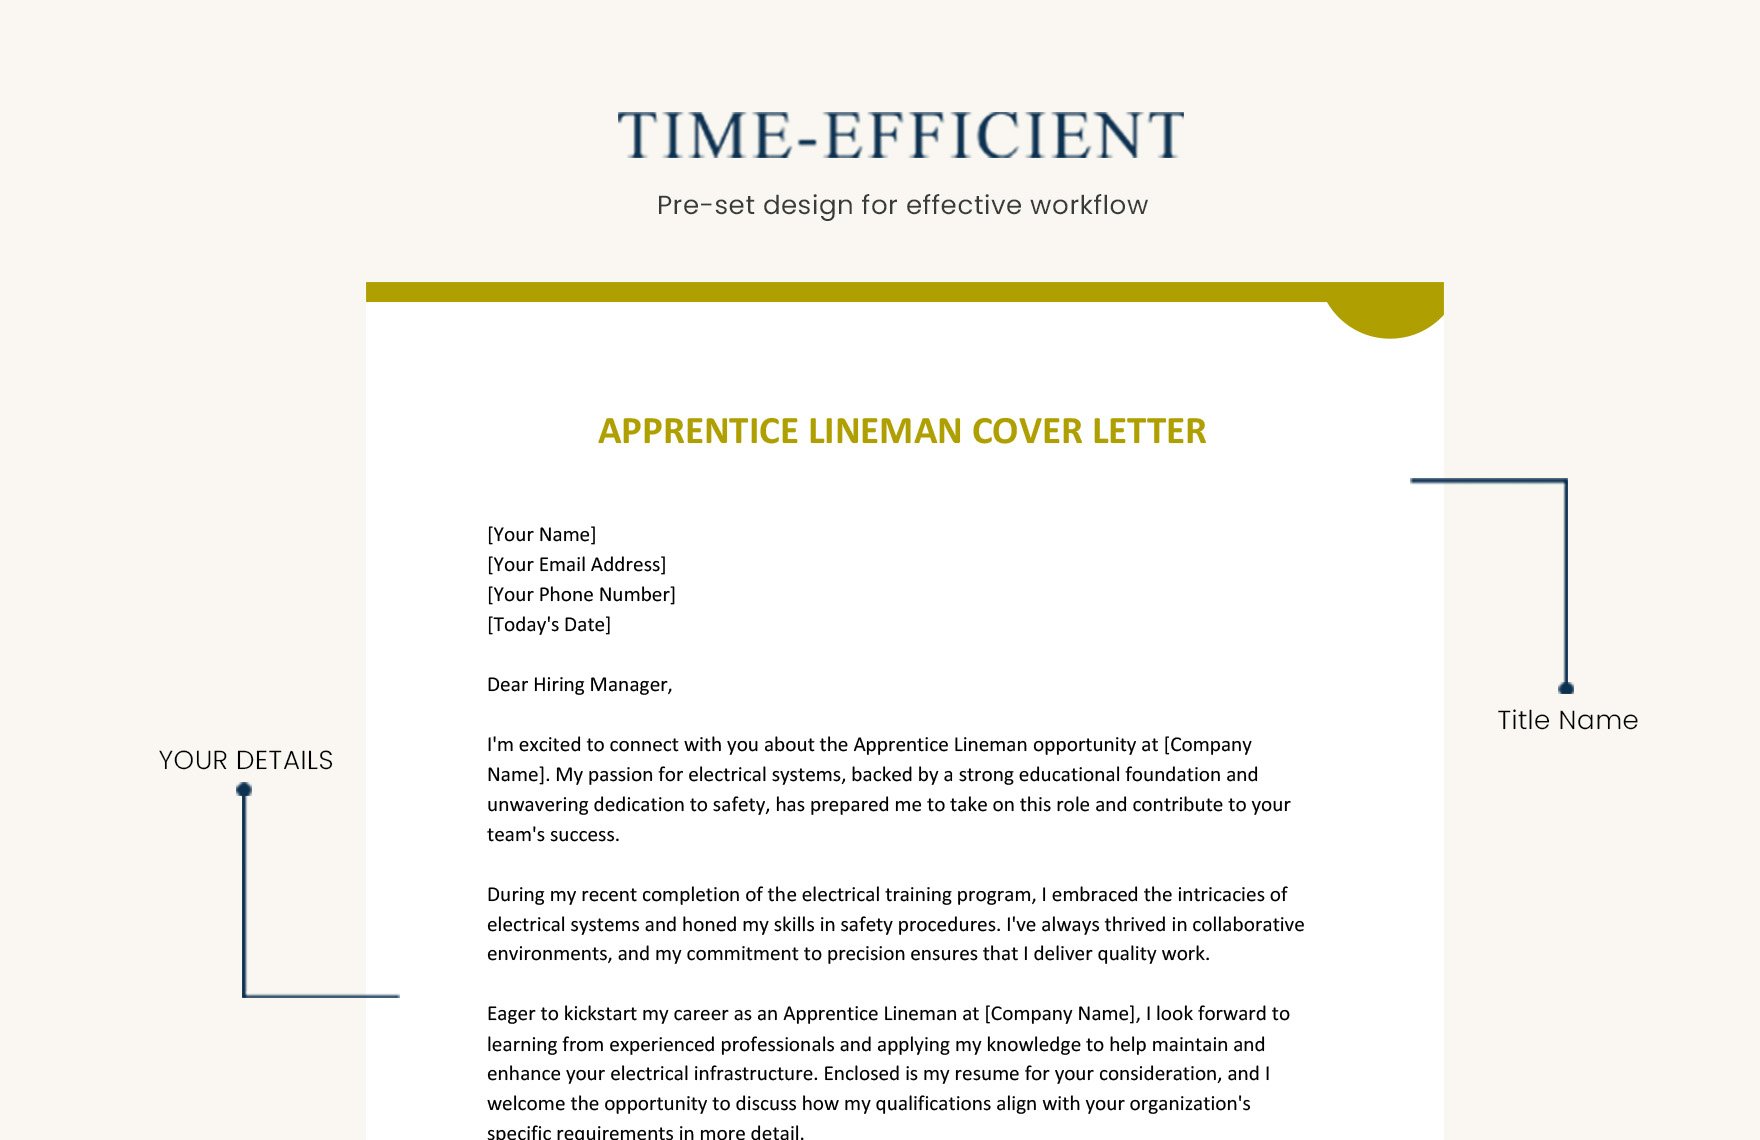 Apprentice Lineman Cover Letter